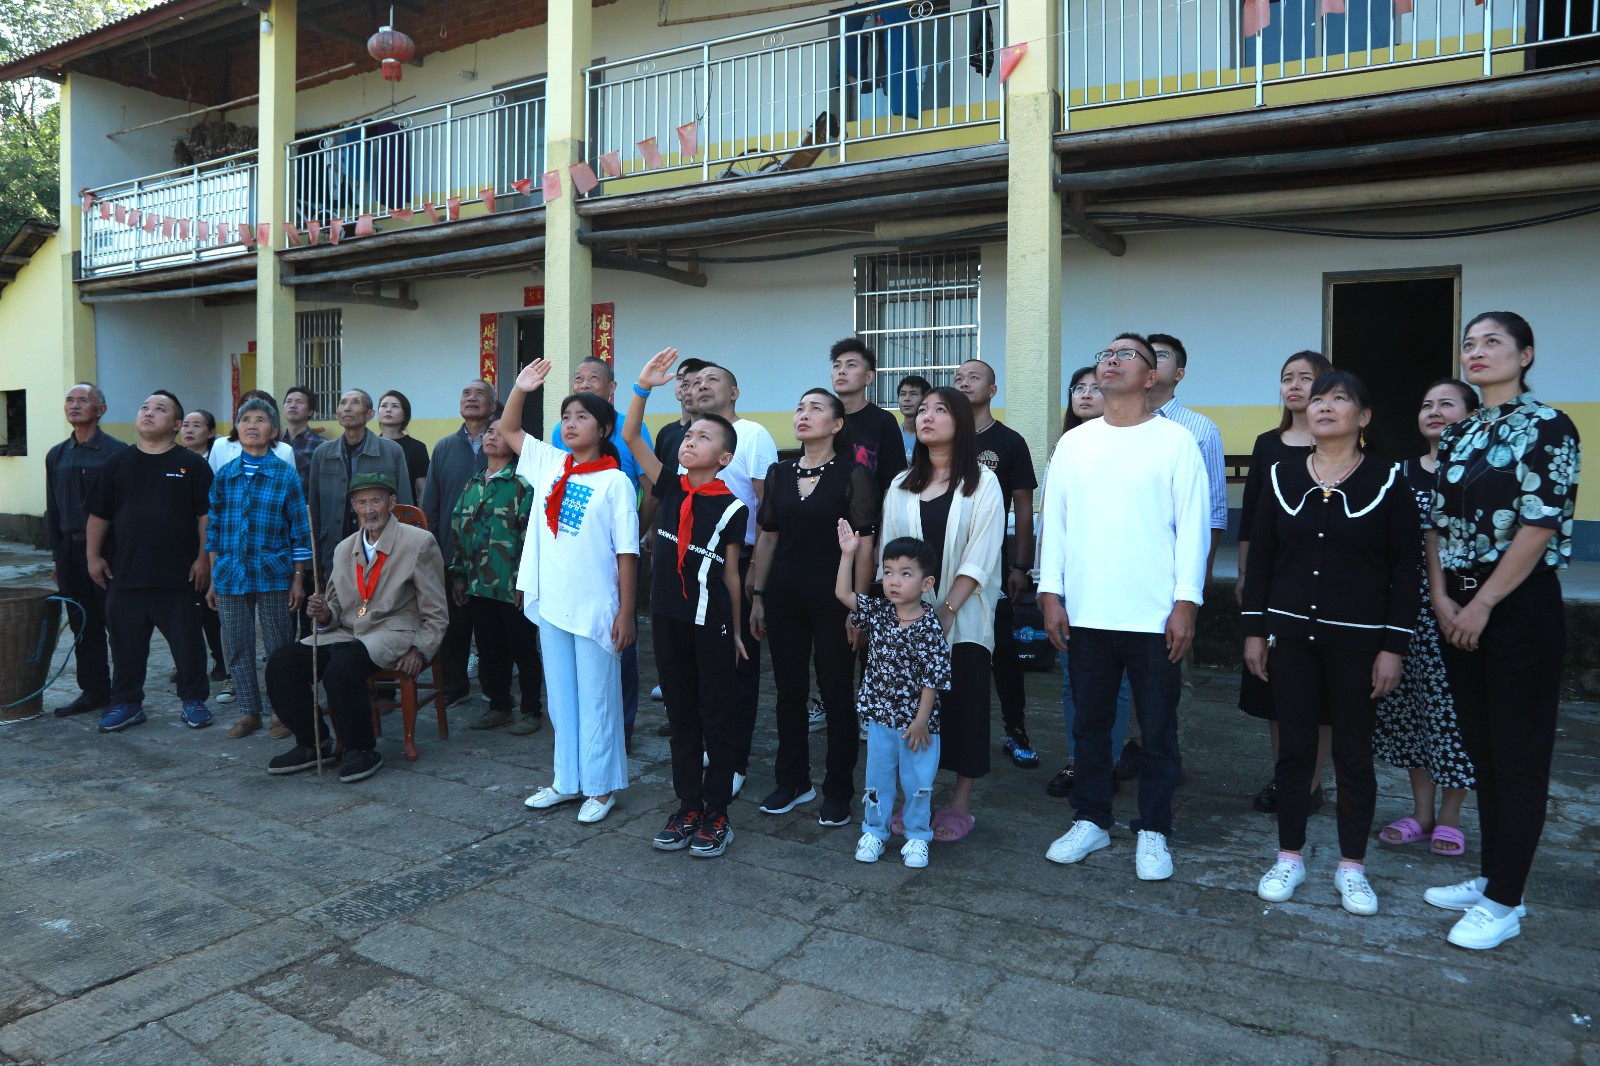 老党员吴绍基与家人和附近村民一起参加升国旗仪式。 (3).JPG